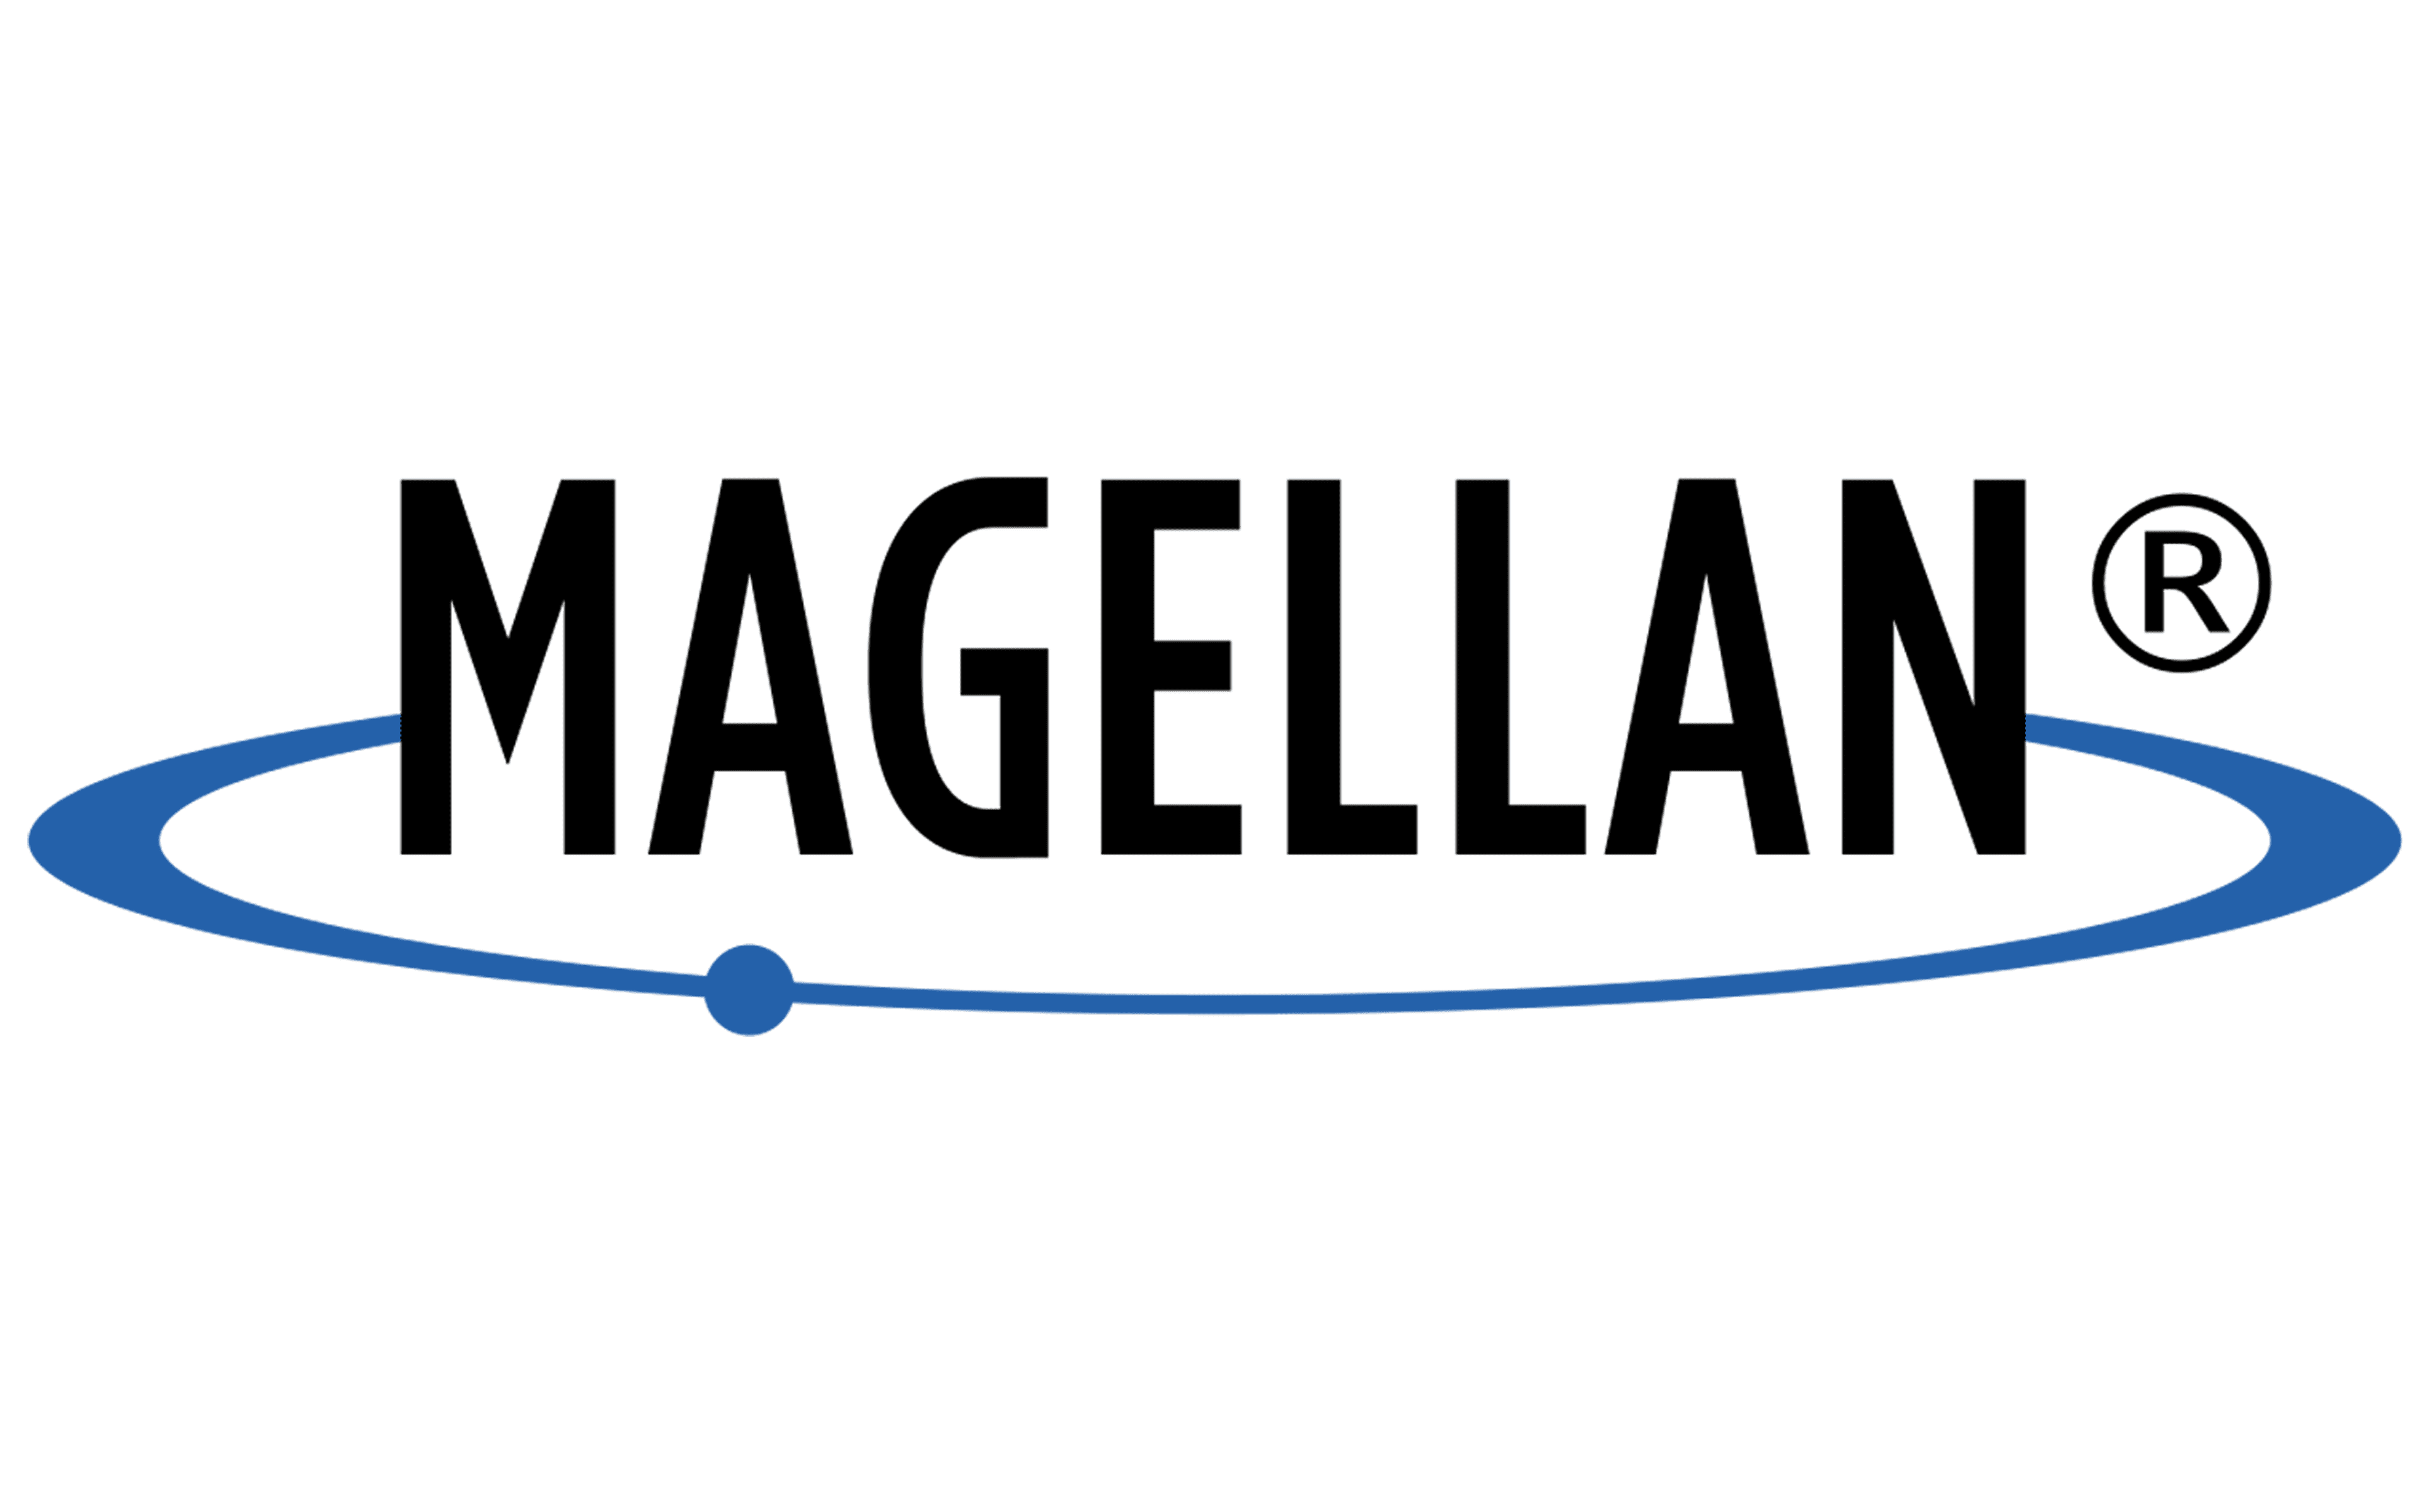 Magellan-Logo